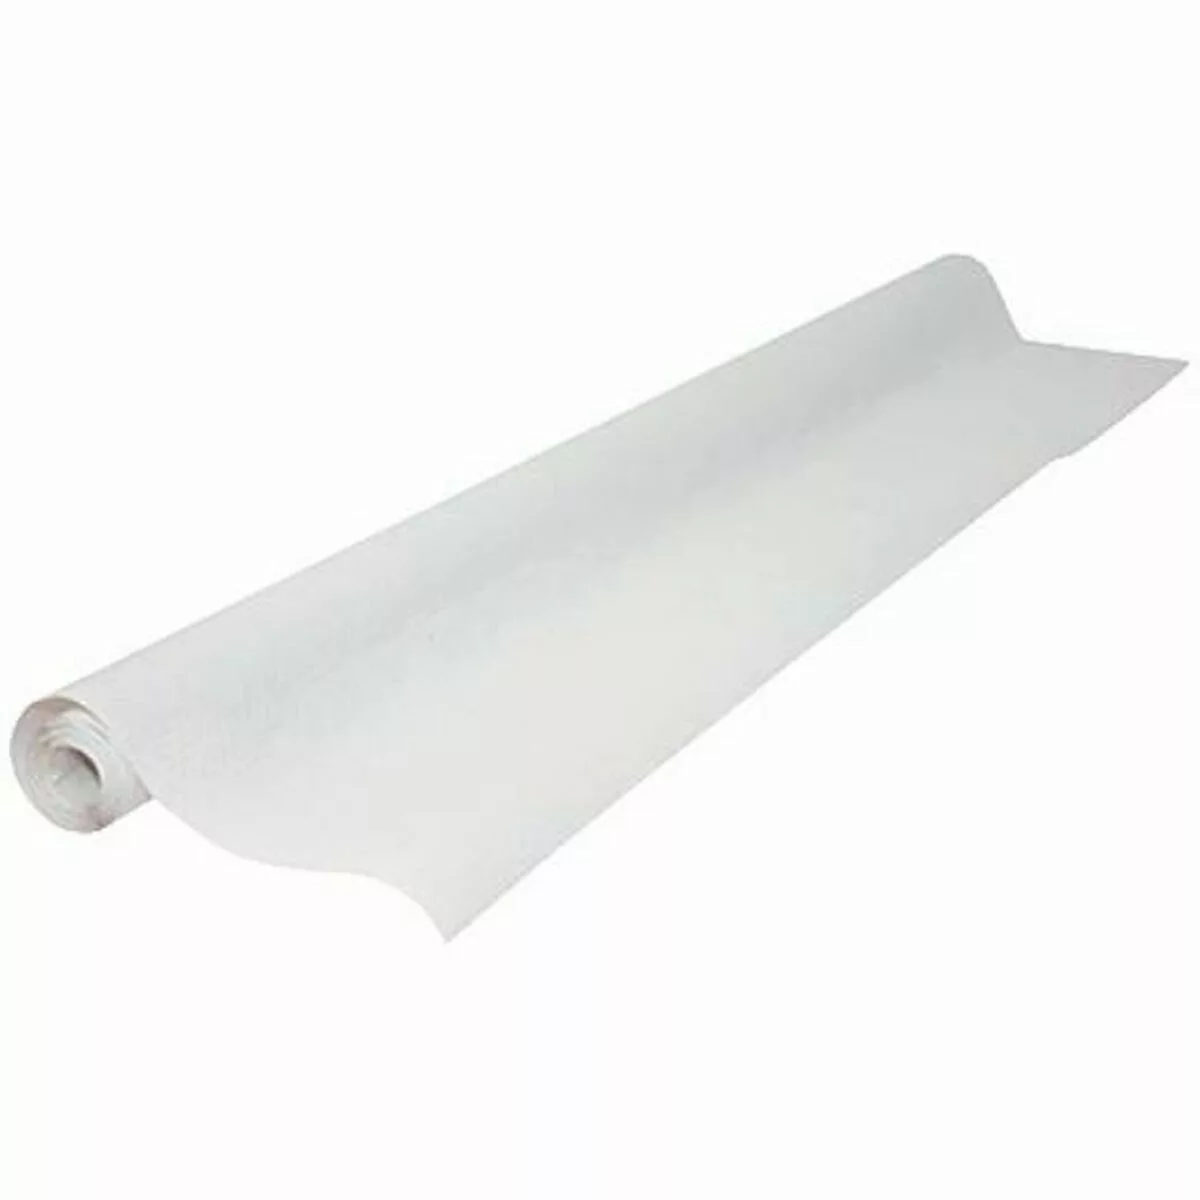 Tischdecke Maxi Products Papier Weiß 24 Stück (1 X 10 M) günstig online kaufen